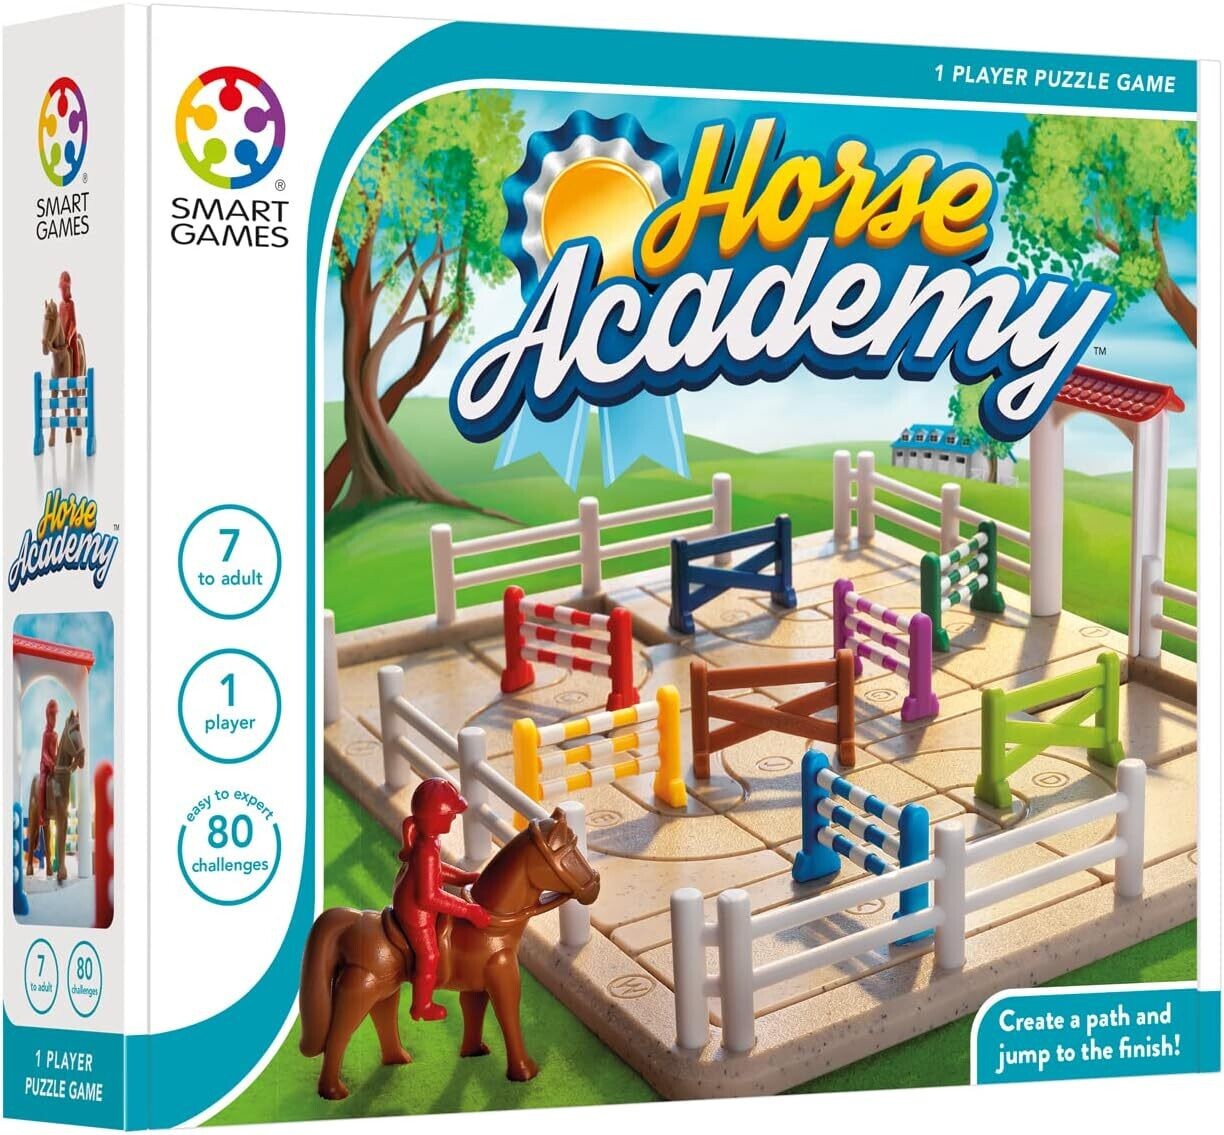 Smart Games - Horse Academy, Puzzle Game avec 80 défis, 7+ Ans
Jeu de réflexion avec chevaux et obstacles